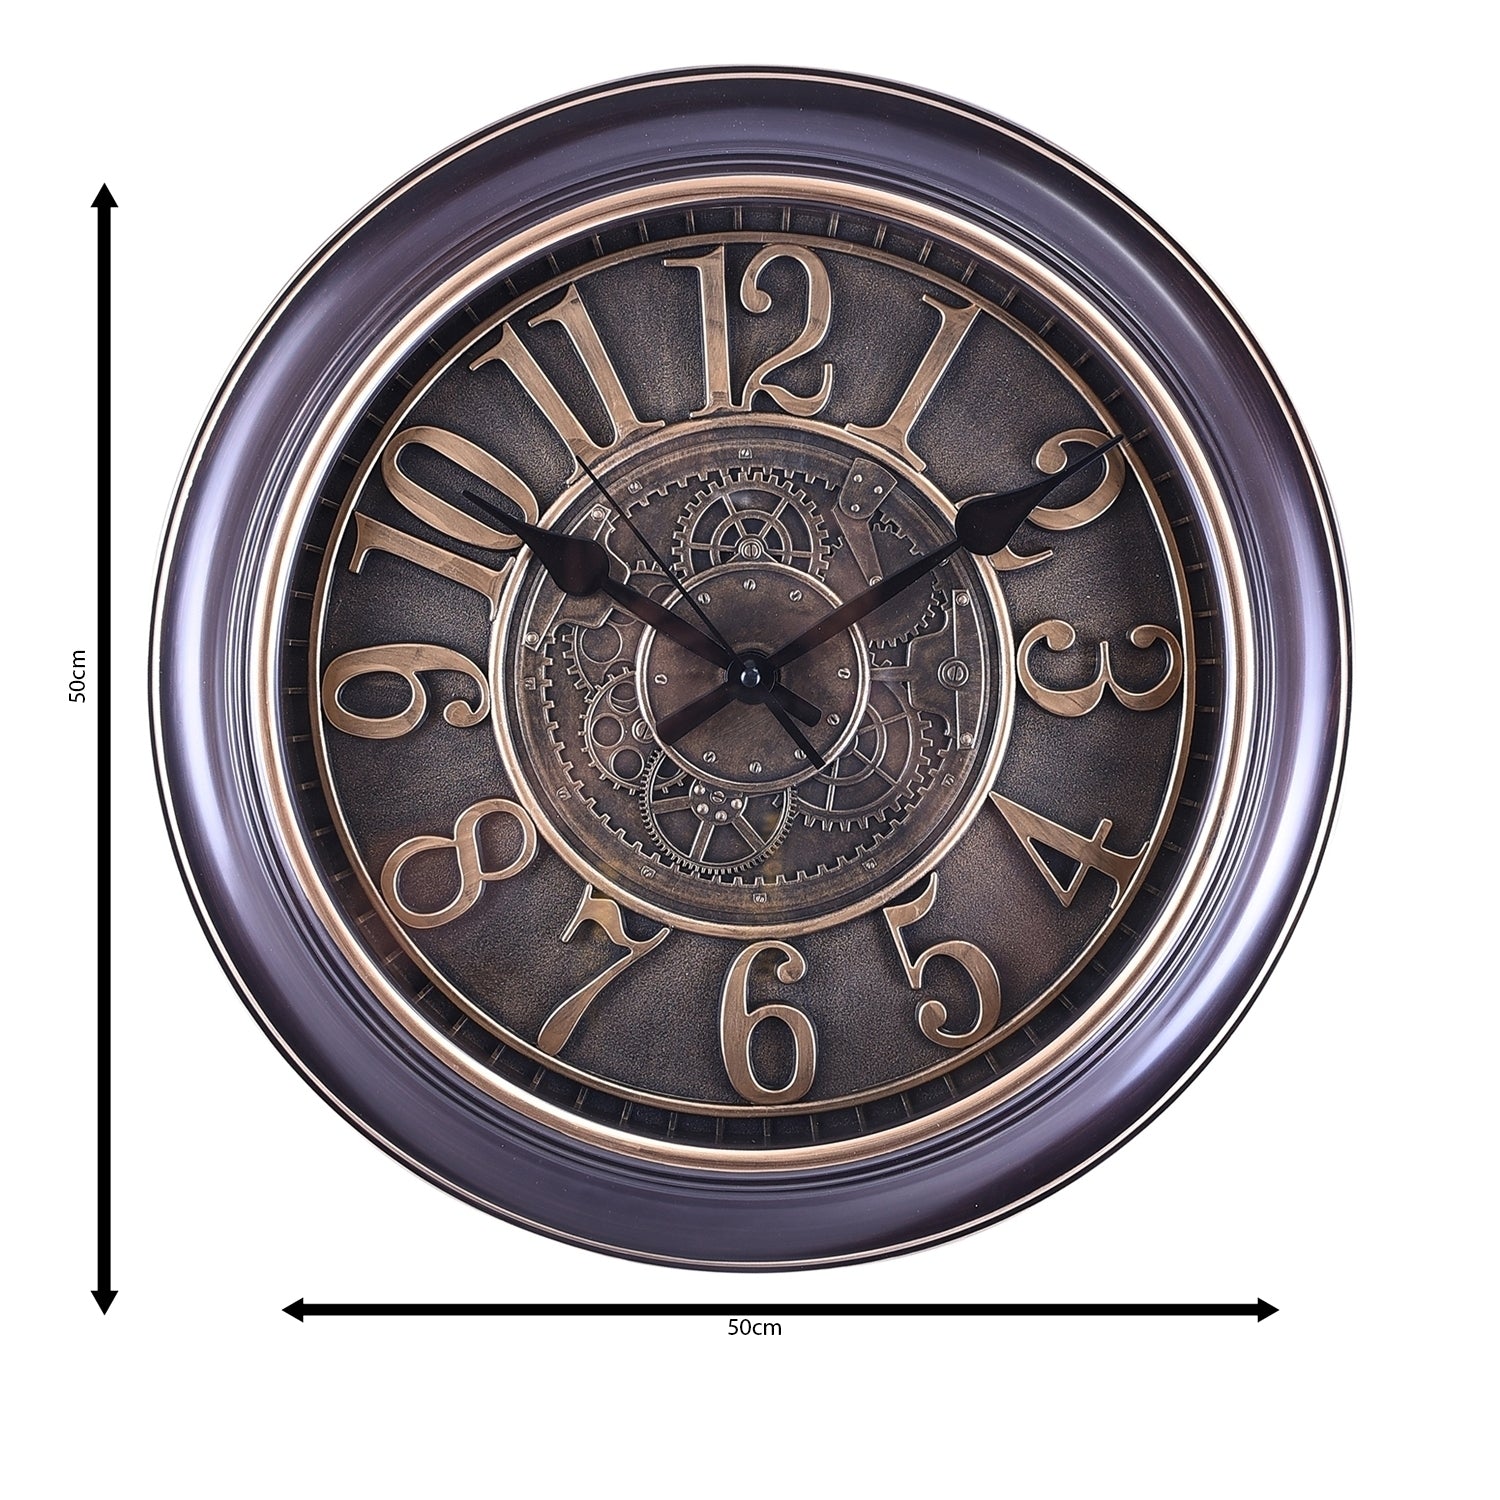 Premium Antique Design Analog Wall Clock 37